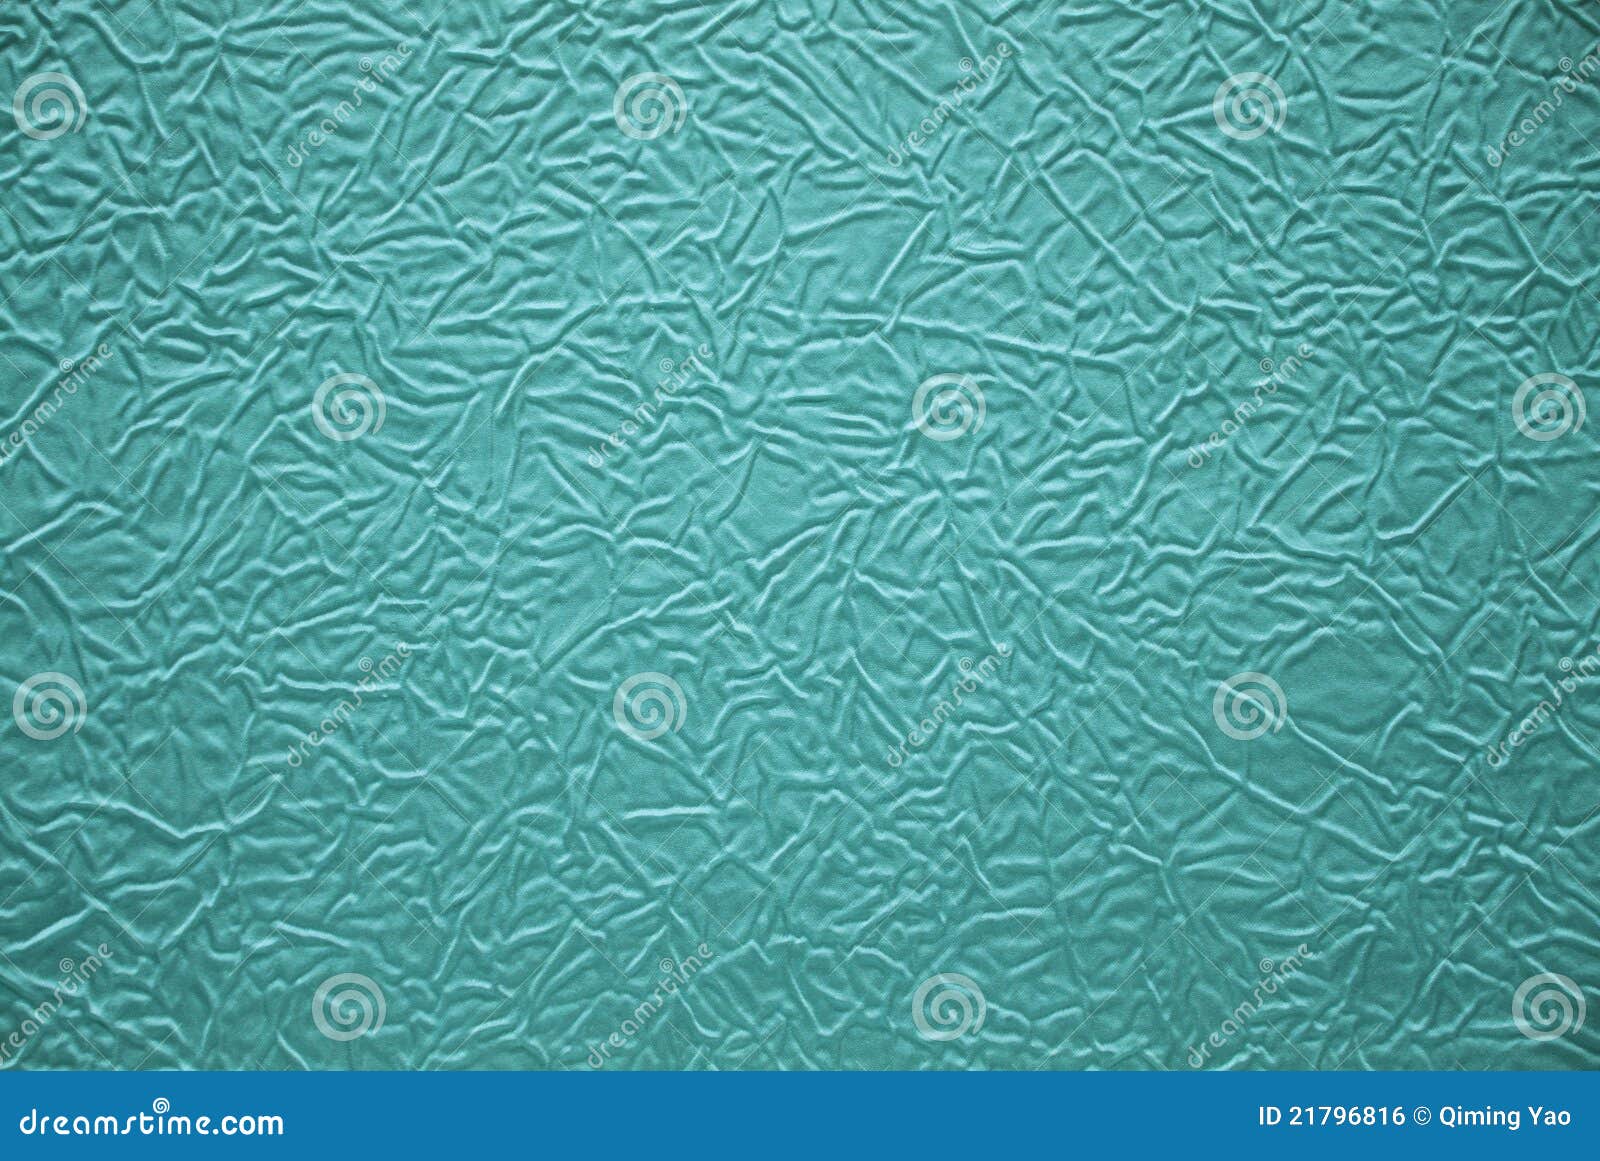 Texturas de la pañería. Texturas de un pedazo de pañería azul.